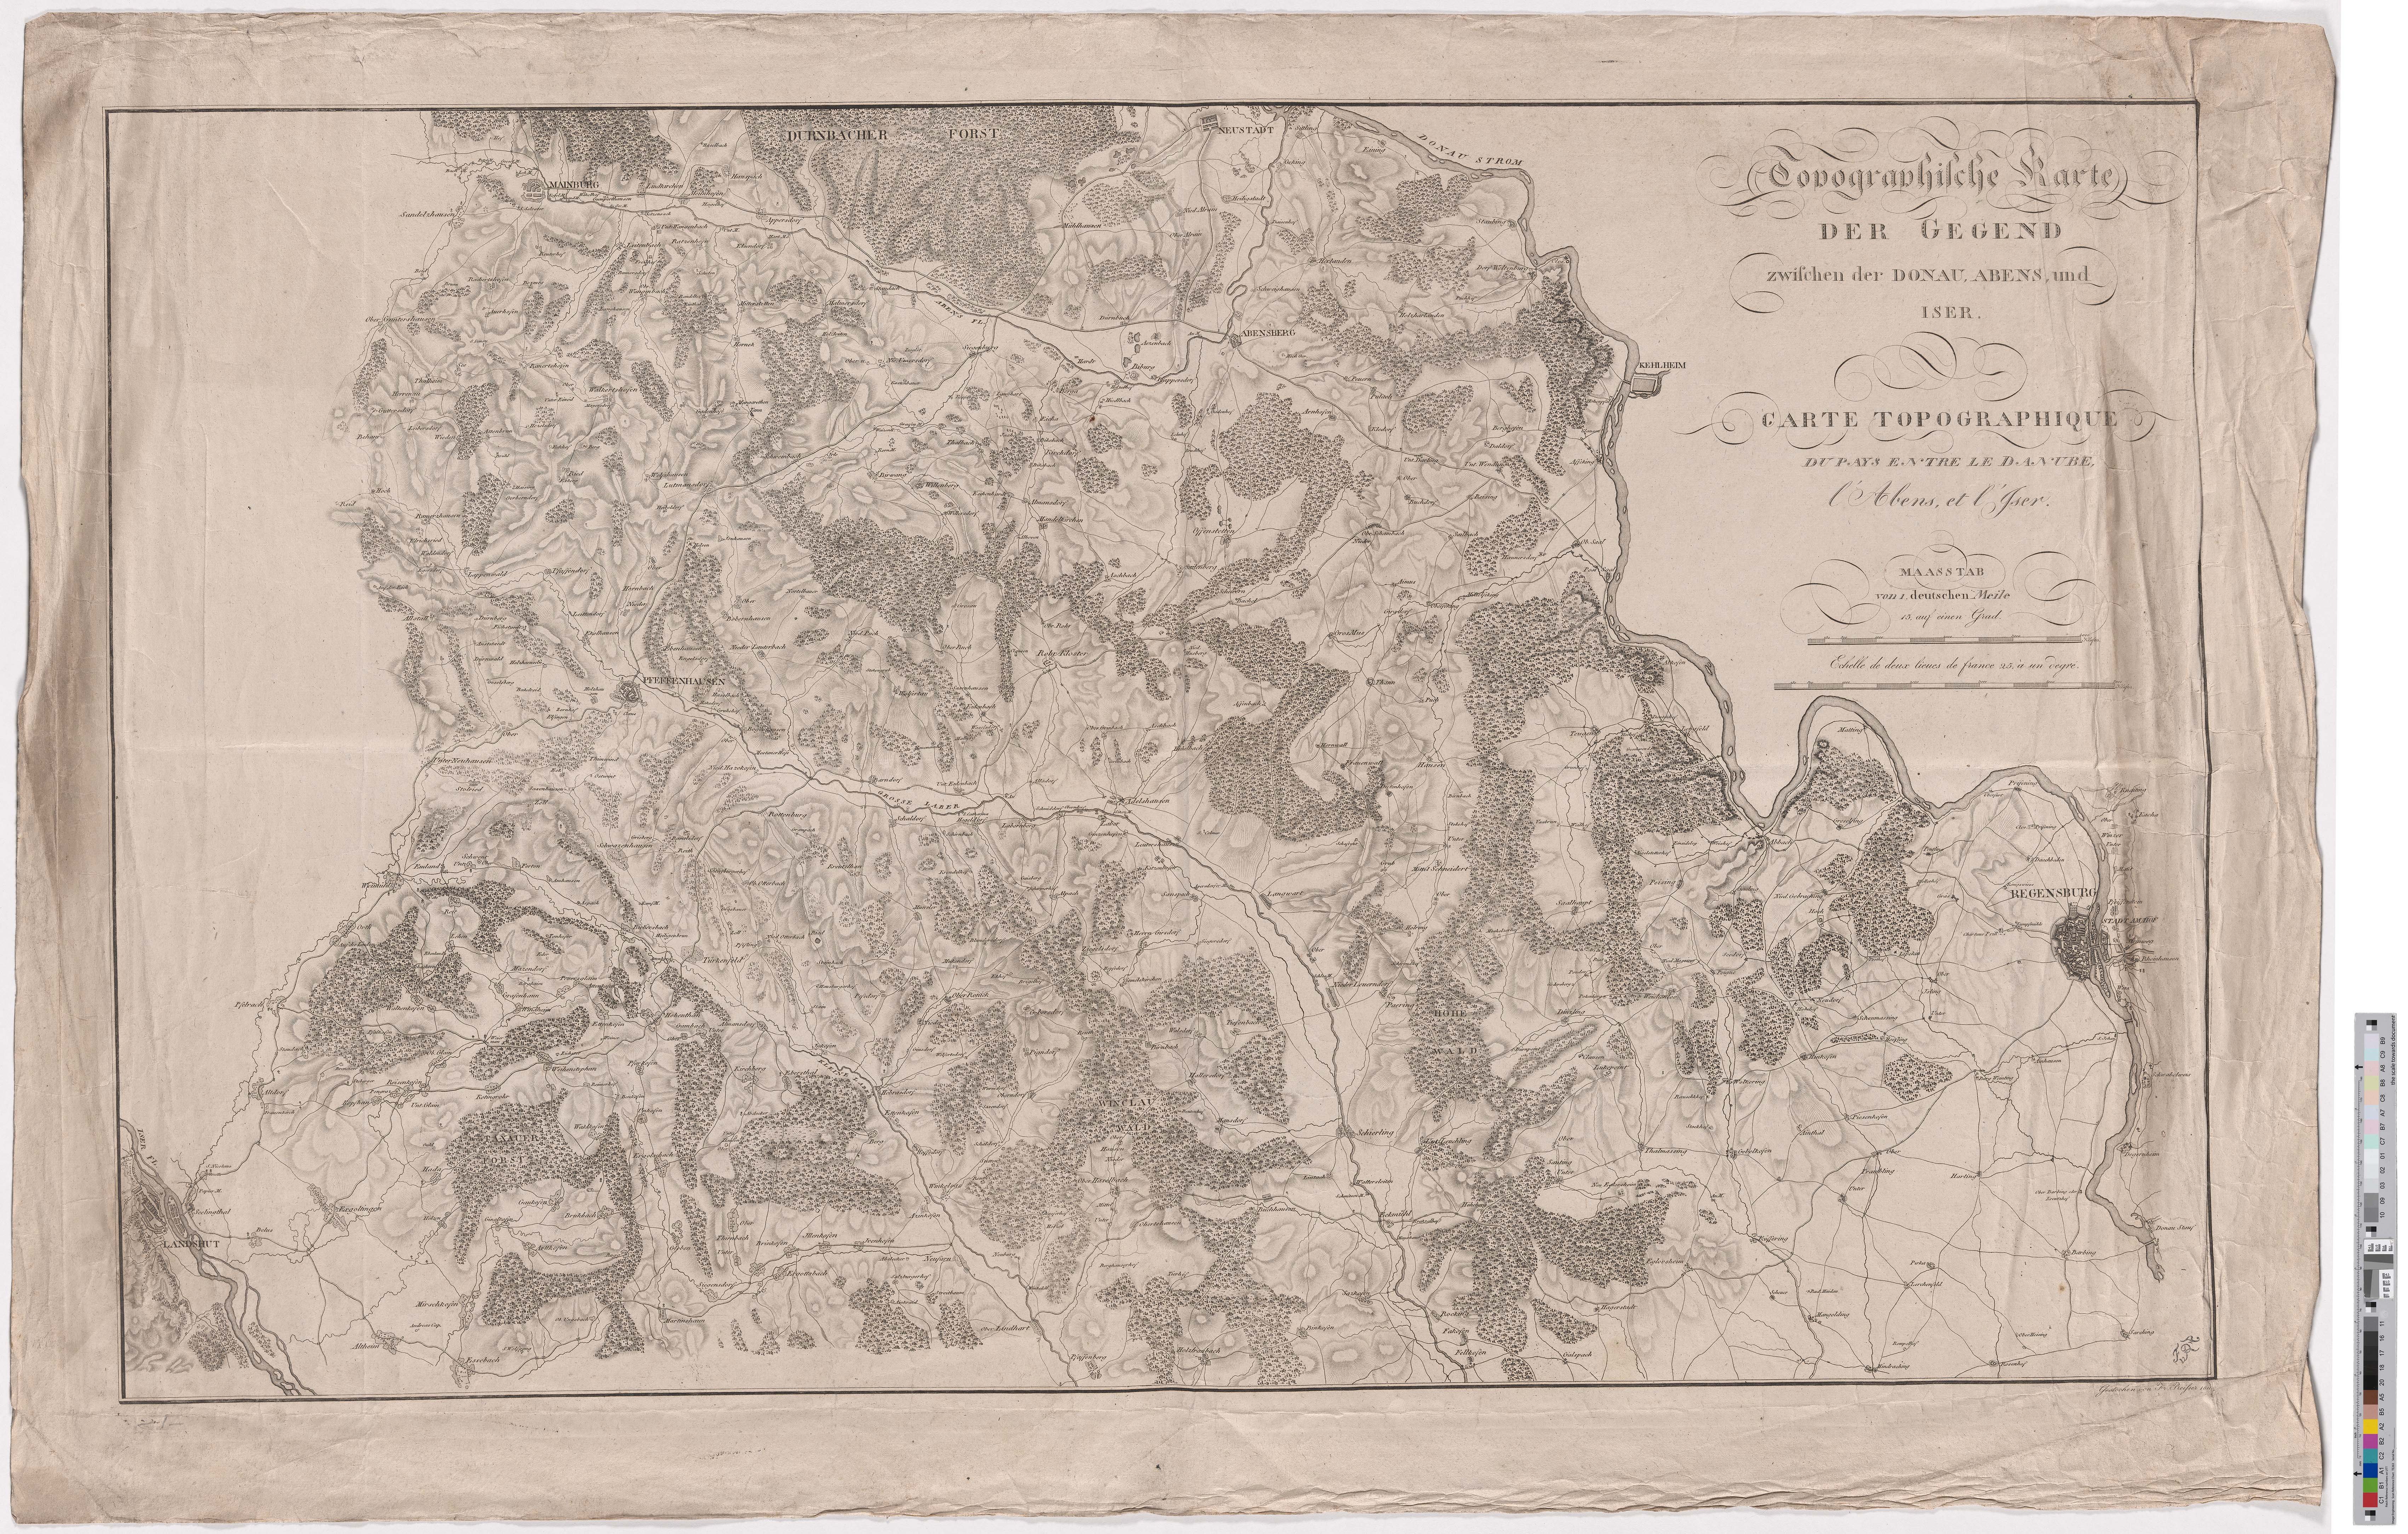 Landkarte "Topographische Karte der Gegend zwischen der Donau, Abens und Iser" (Kreismuseum Grimma RR-F)